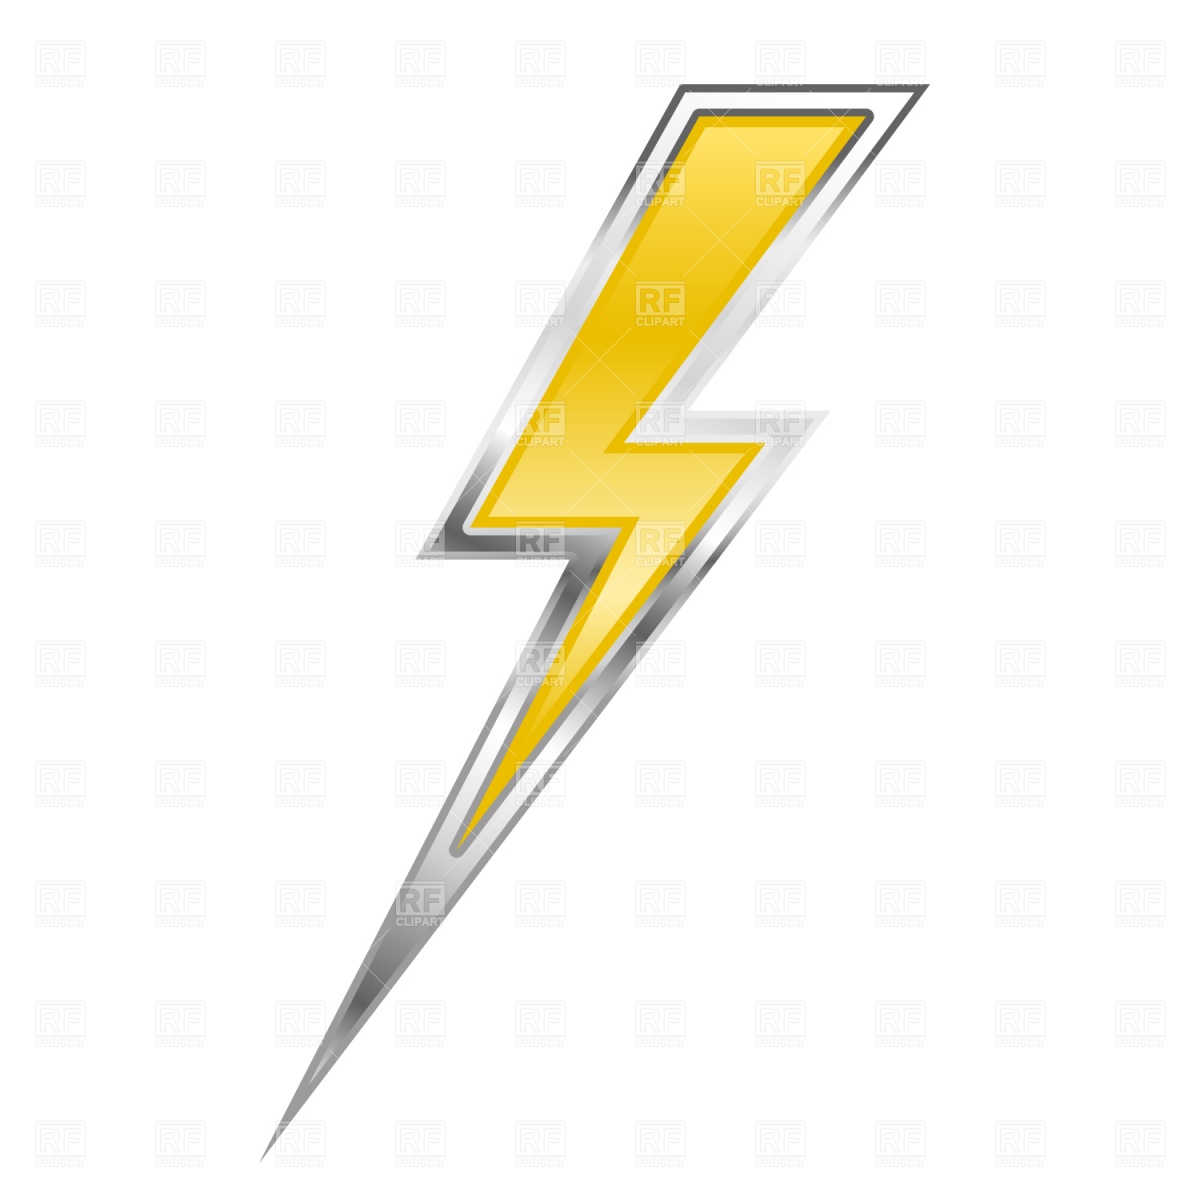 lightning bolt clipart flash